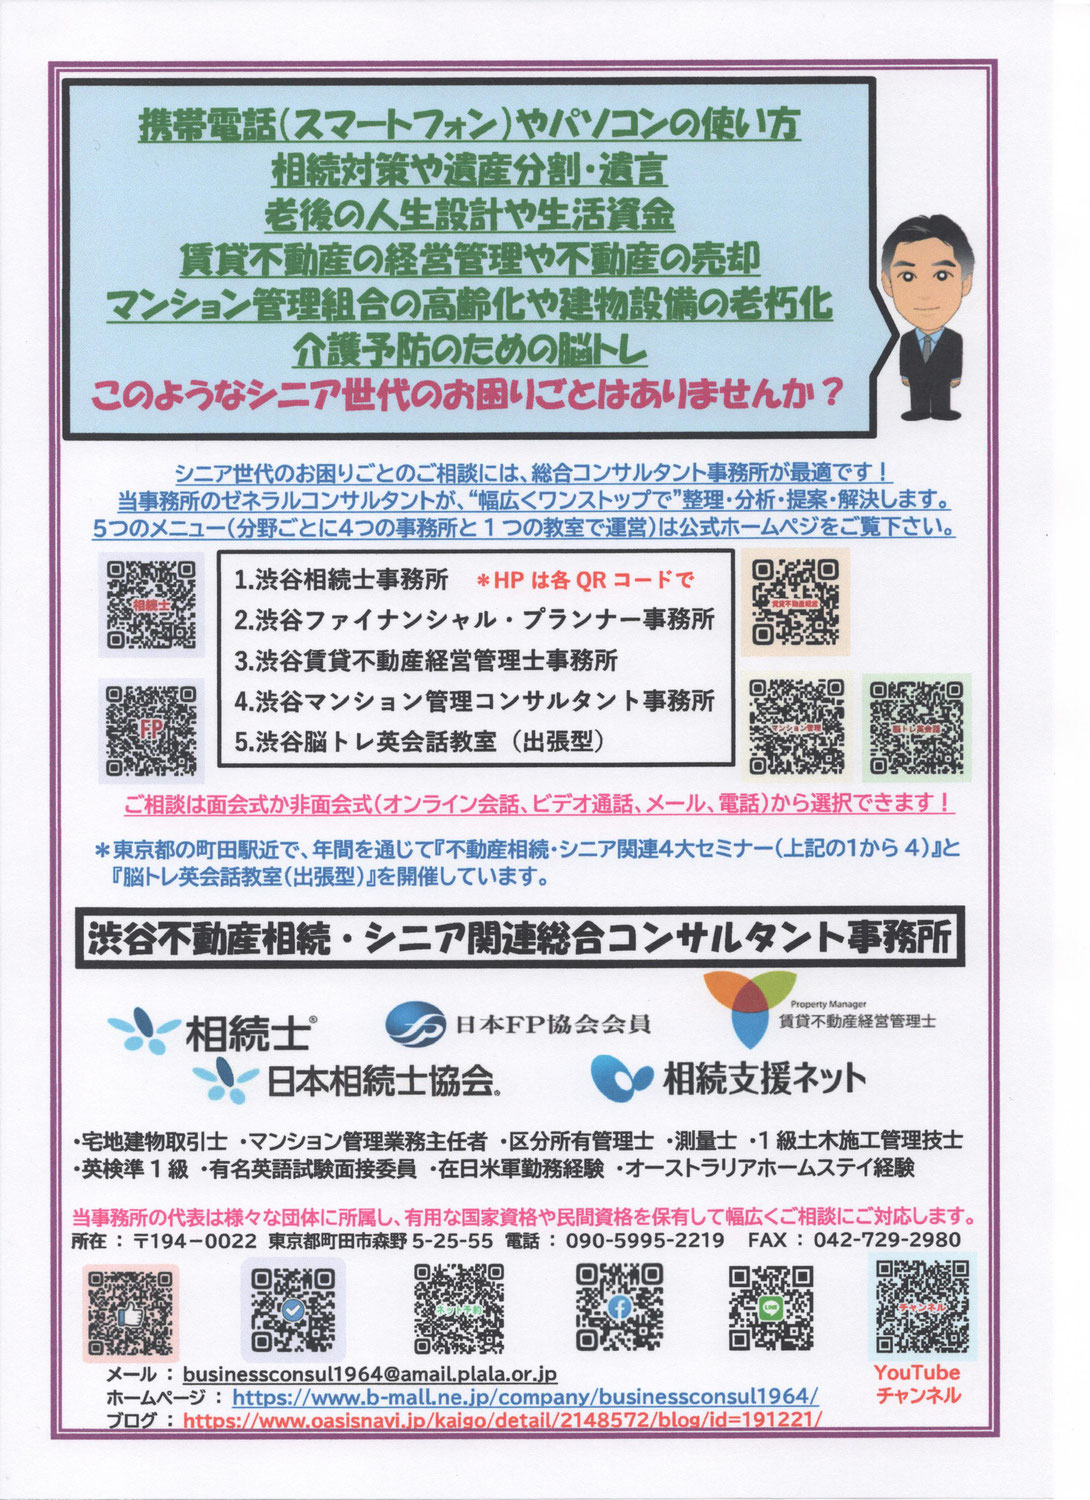 渋谷不動産相続・シニア関連総合コンサルタント事務所のPR広告を改訂しました！